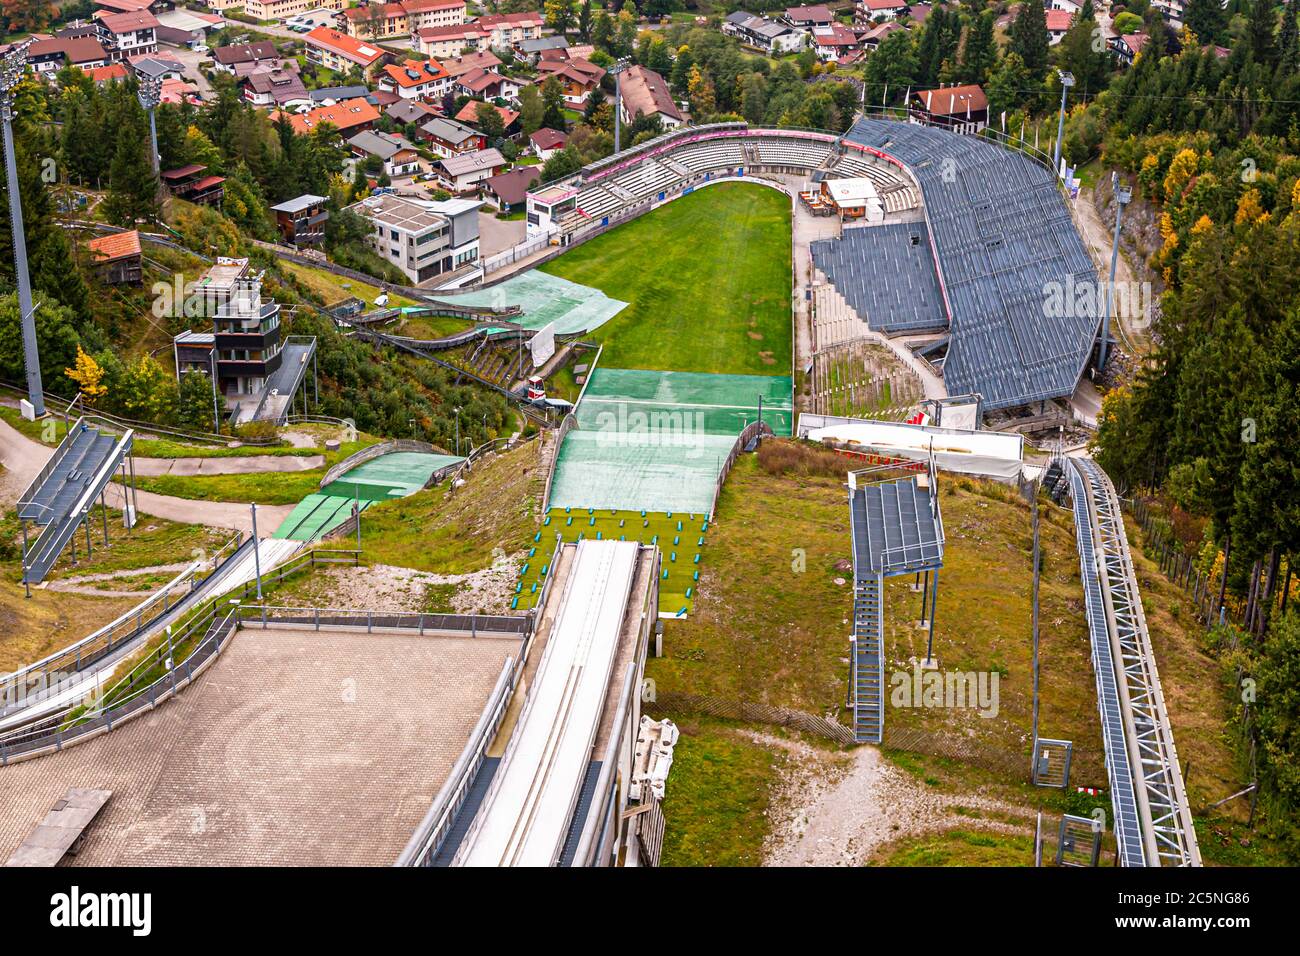 Oberstdorf vu du saut à ski de Schattenberg. C'est là que commence traditionnellement le tournoi four Hills. Oberstdorf, Allemagne Banque D'Images